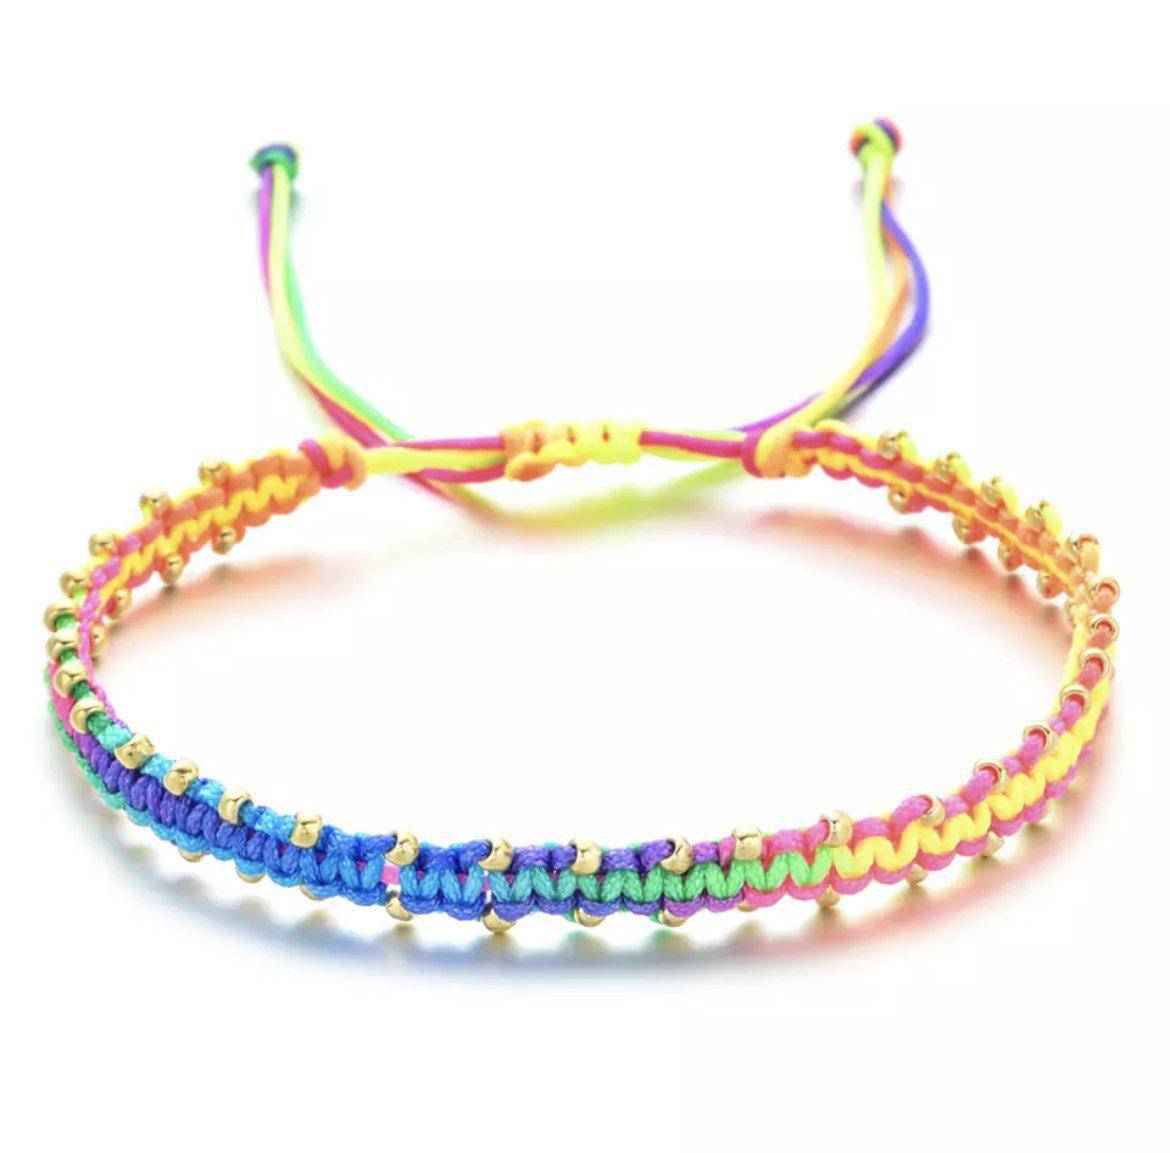 Neon Beaded Woven Bracelet - Twinkle Twinkle Little One